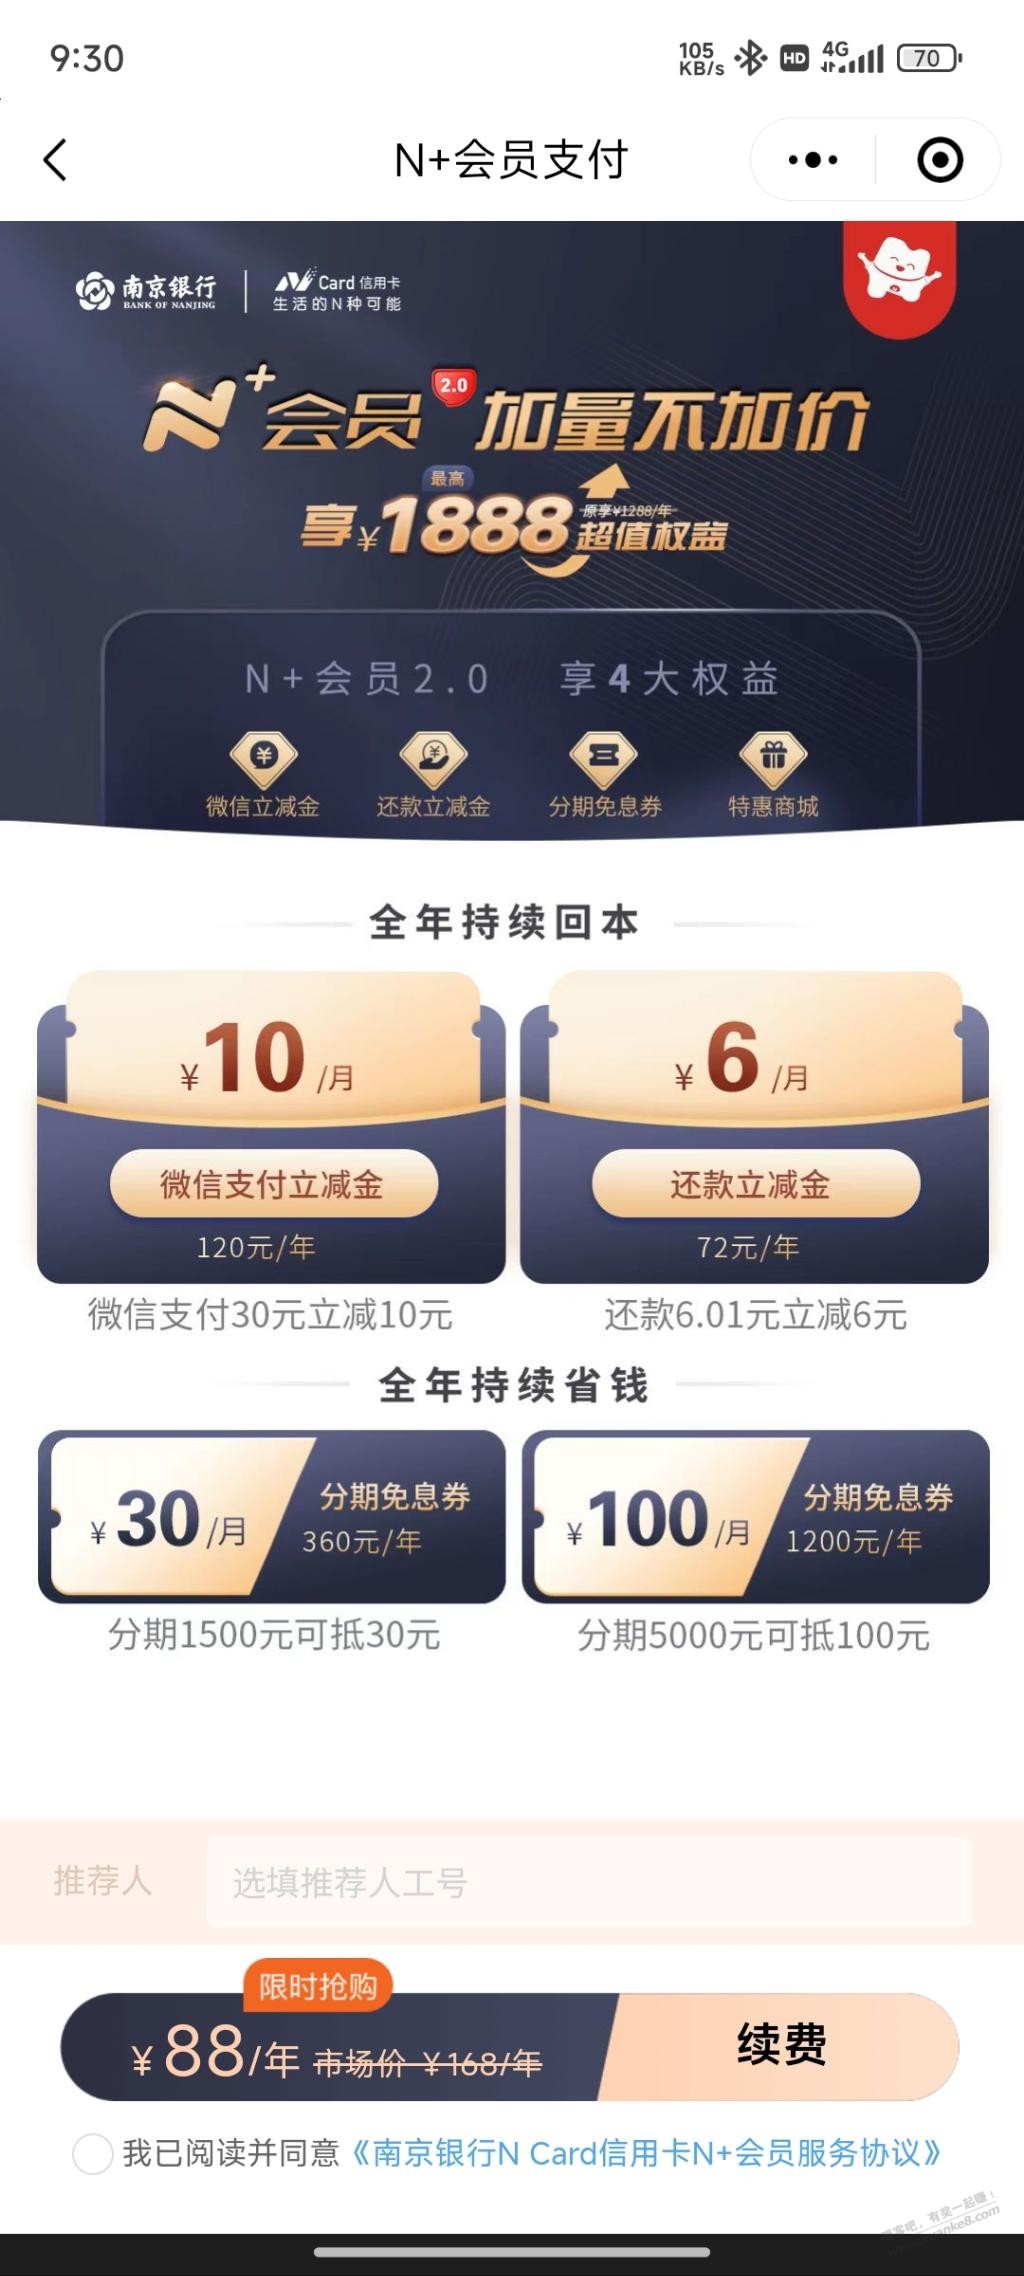 大毛-有南京银行N card的xing/用卡的速度冲-惠小助(52huixz.com)